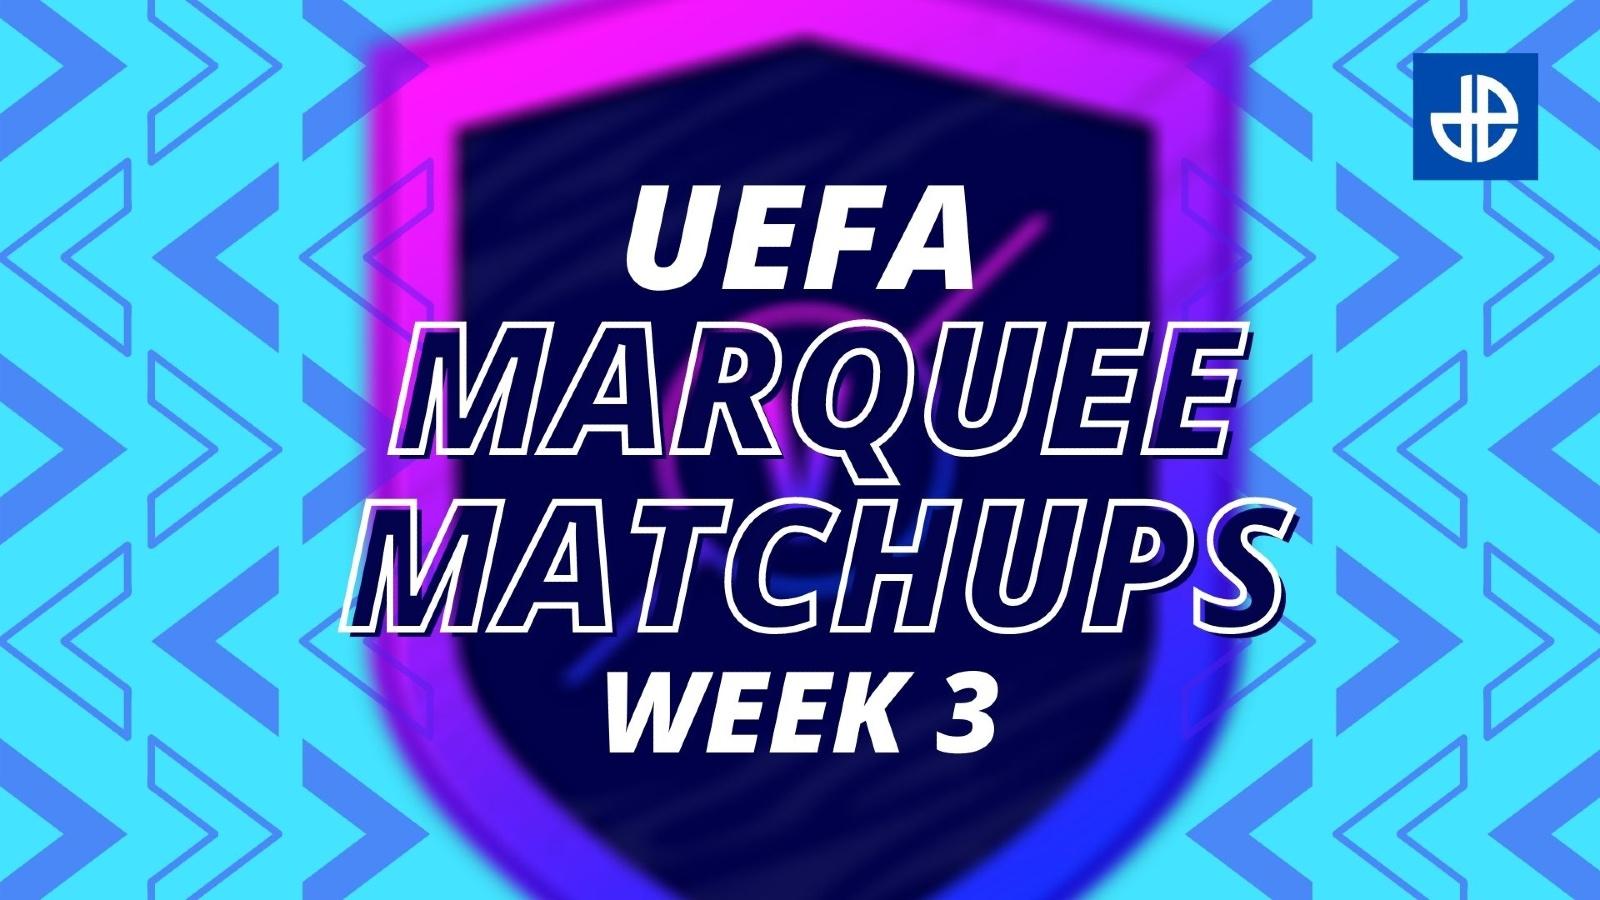 FIFA 21 UEFA Marquee Matchups SBC Week 3